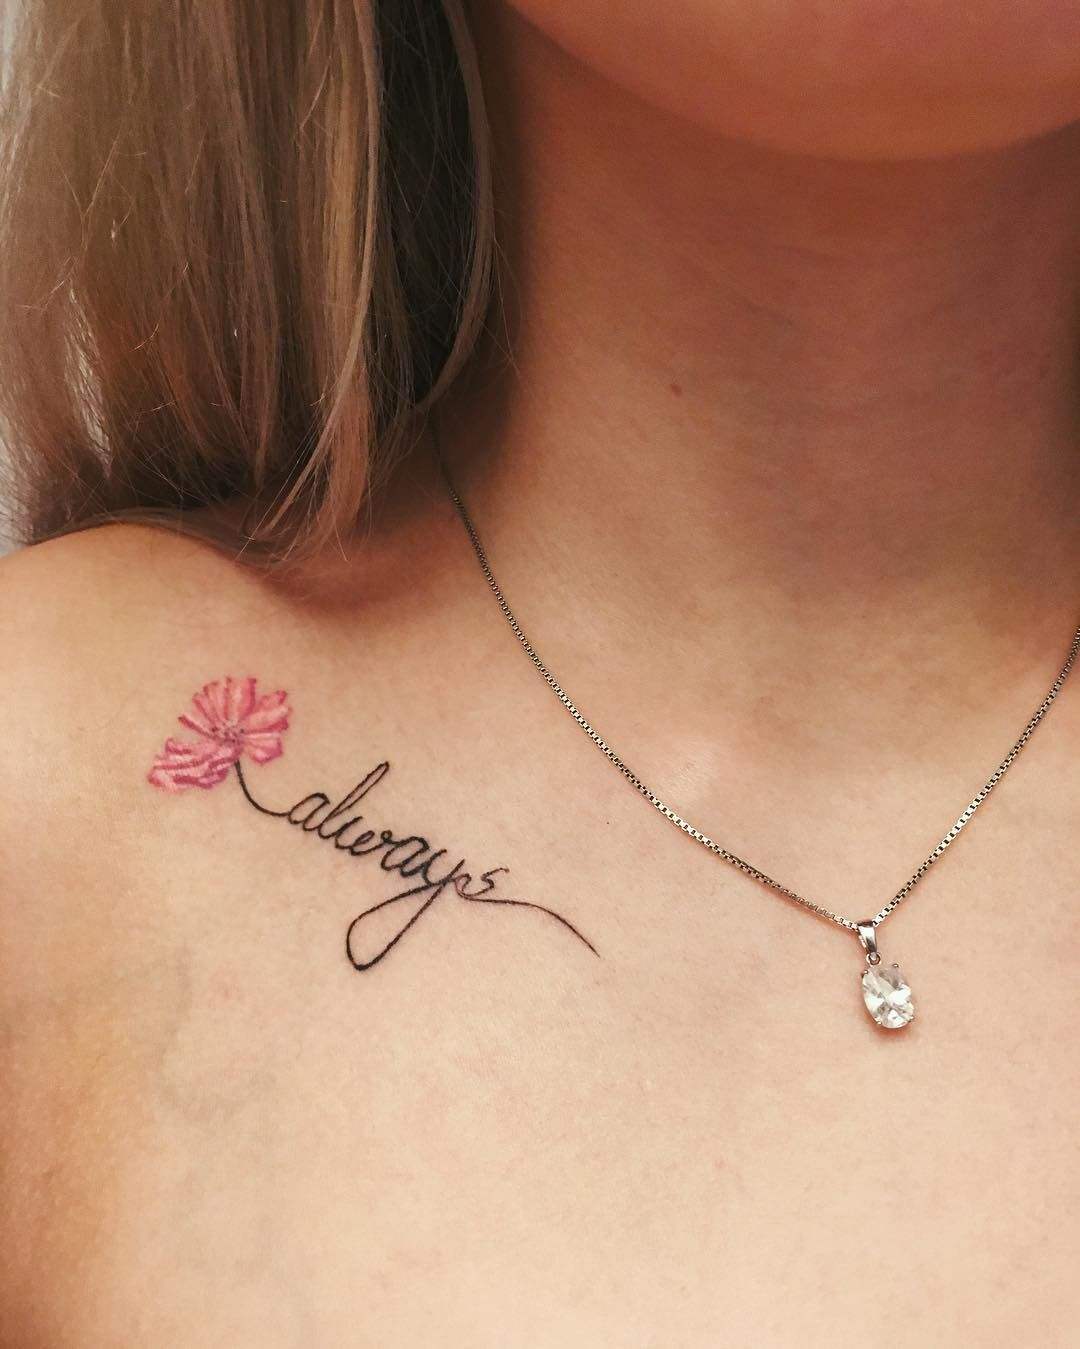 Schlüsselbein Tattoo klein Schriftzug mit Blume Tattoodesign Frauen